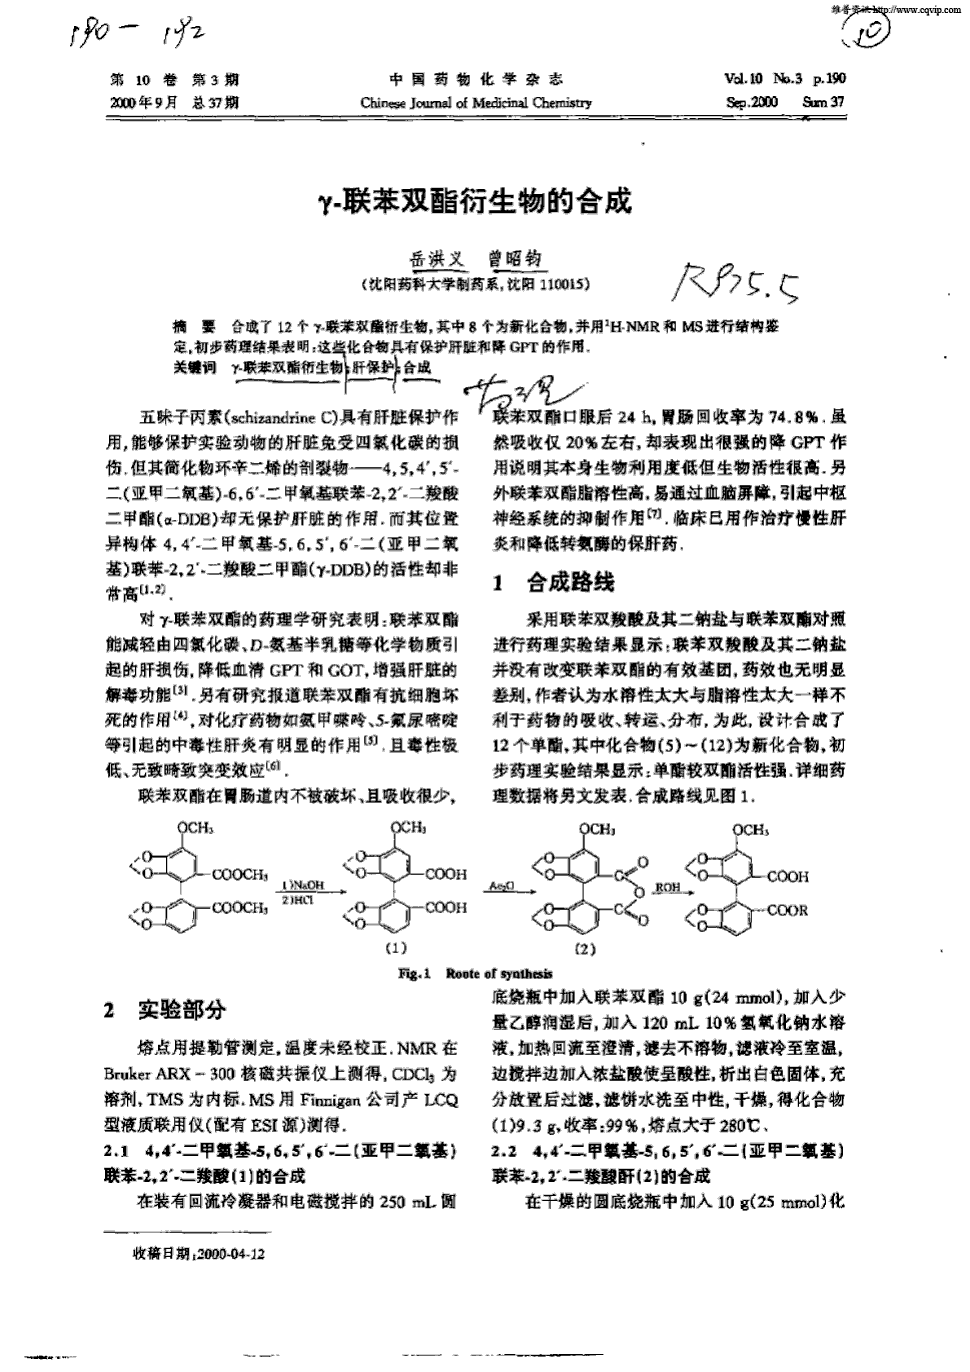 期刊γ—联苯双酯衍生物的合成被引量:10    合成了12个γ-联苯双酯